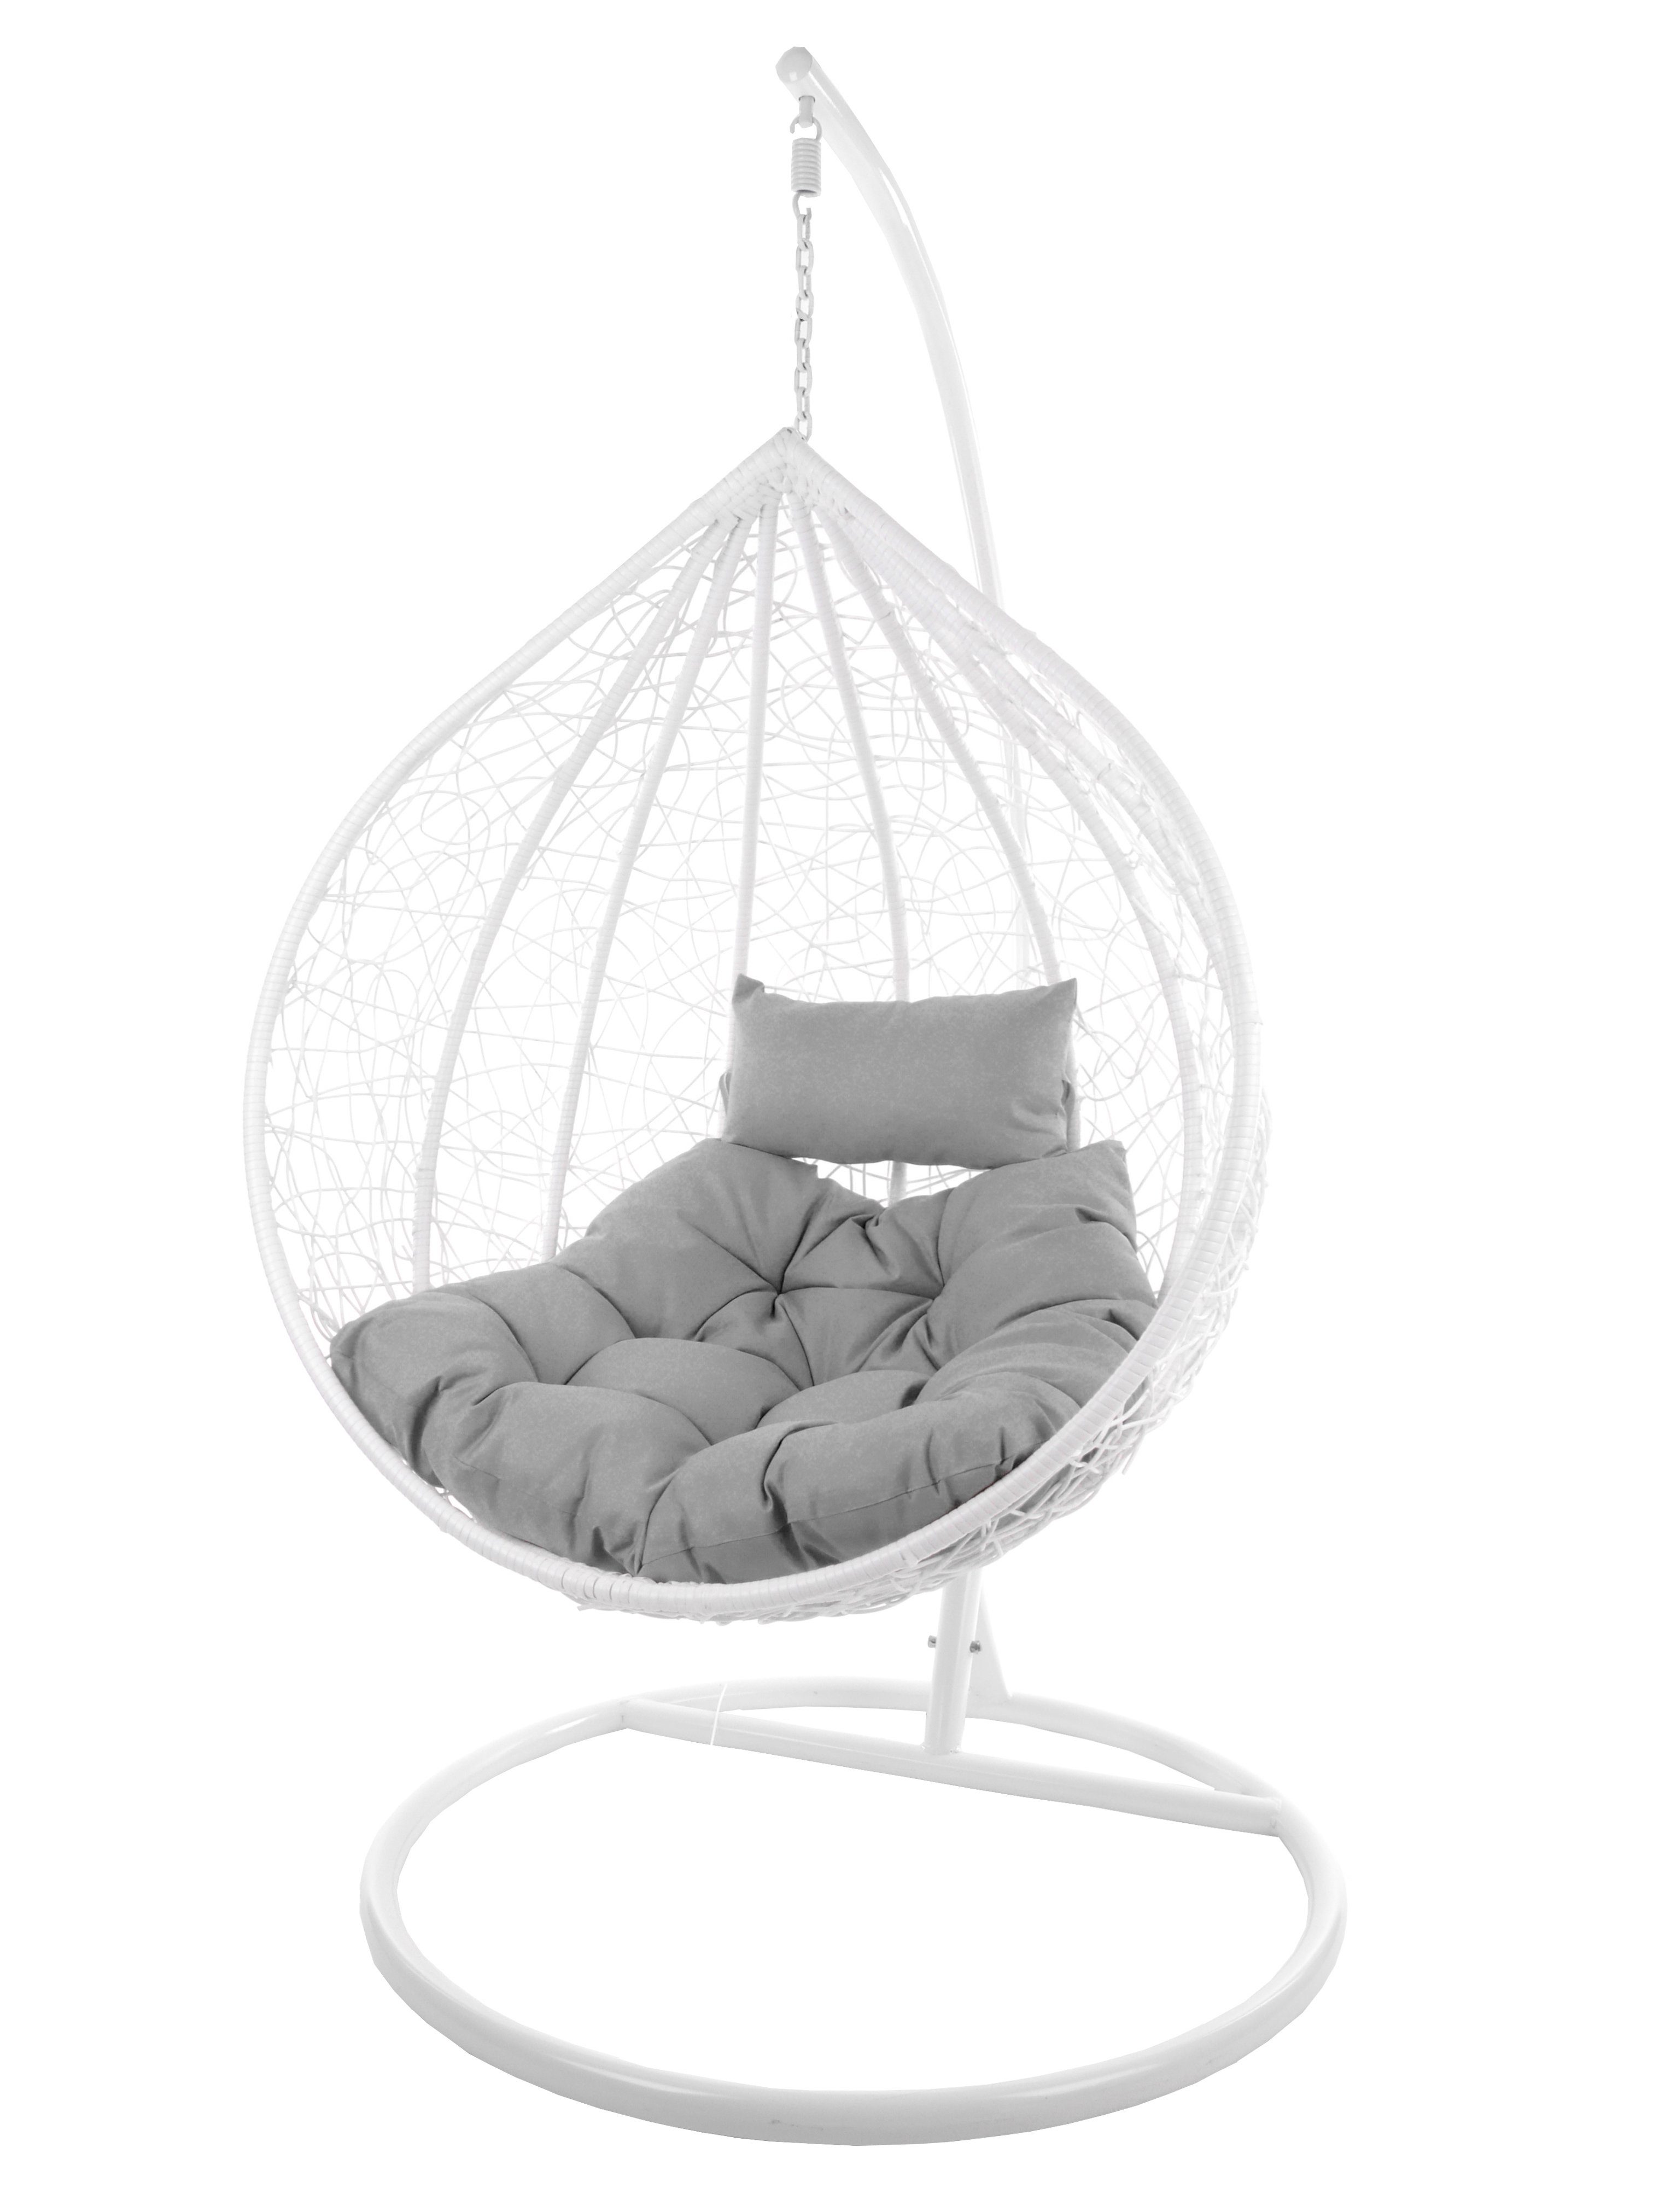 KIDEO Hängesessel Hängesessel MANACOR weiß, Swing Chair, weiß, Loungesessel mit Gestell und Kissen grau (8008 cloud)